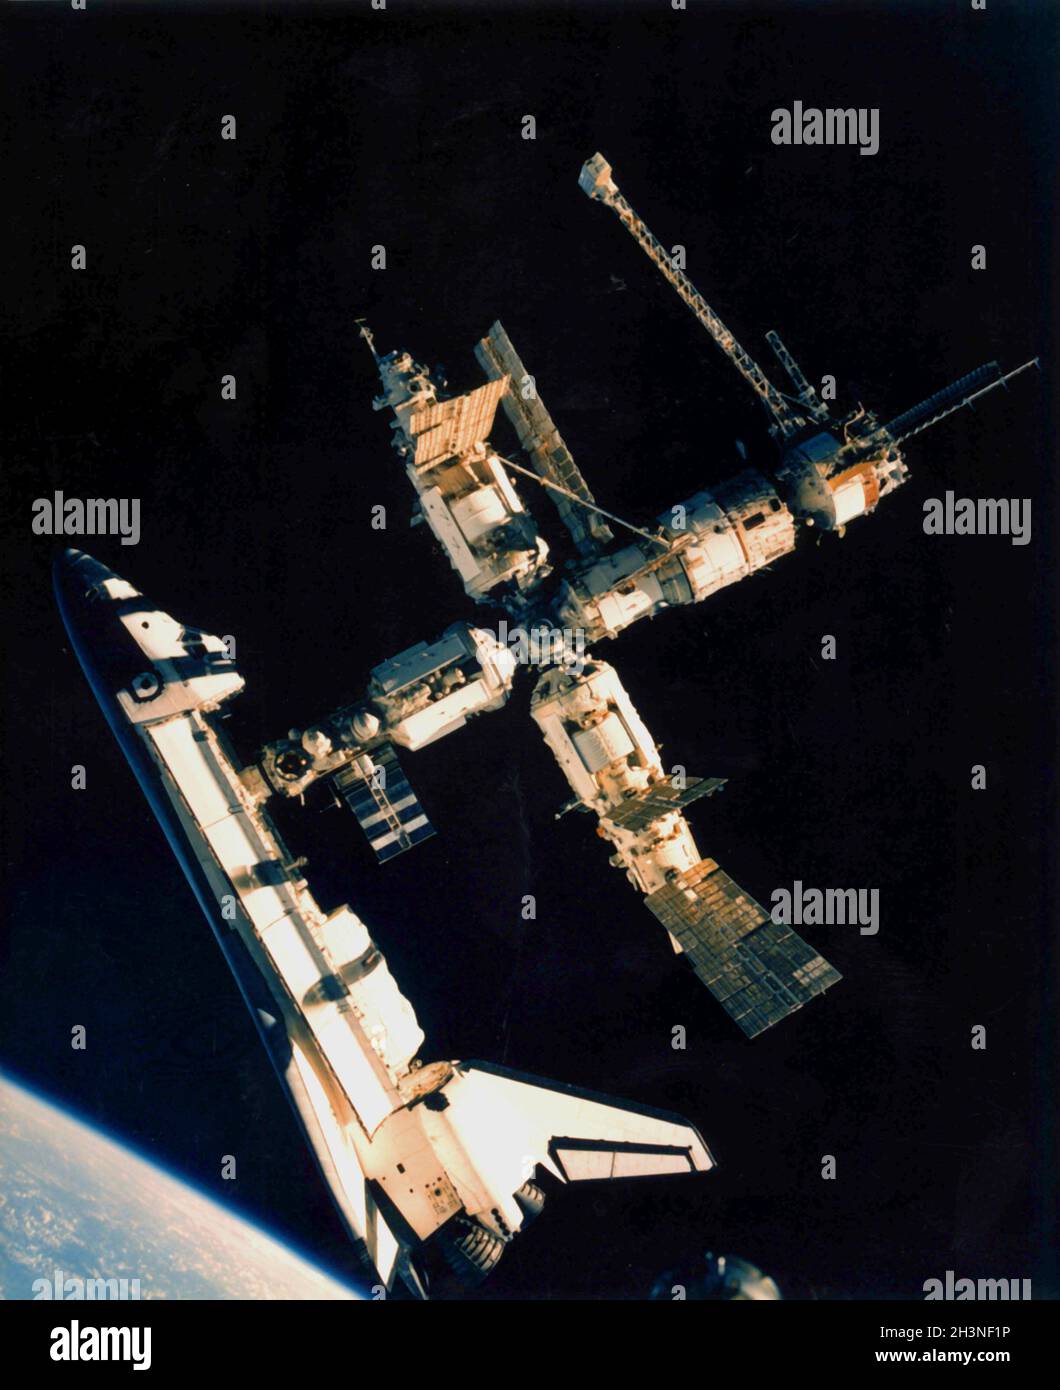 ERDORBIT - 04. Juli 1995 - das Space Shuttle Atlantis ist noch immer mit der russischen mir-Raumstation verbunden - zum ersten Mal. Kosmonauten Solovjuv und BU Stockfoto